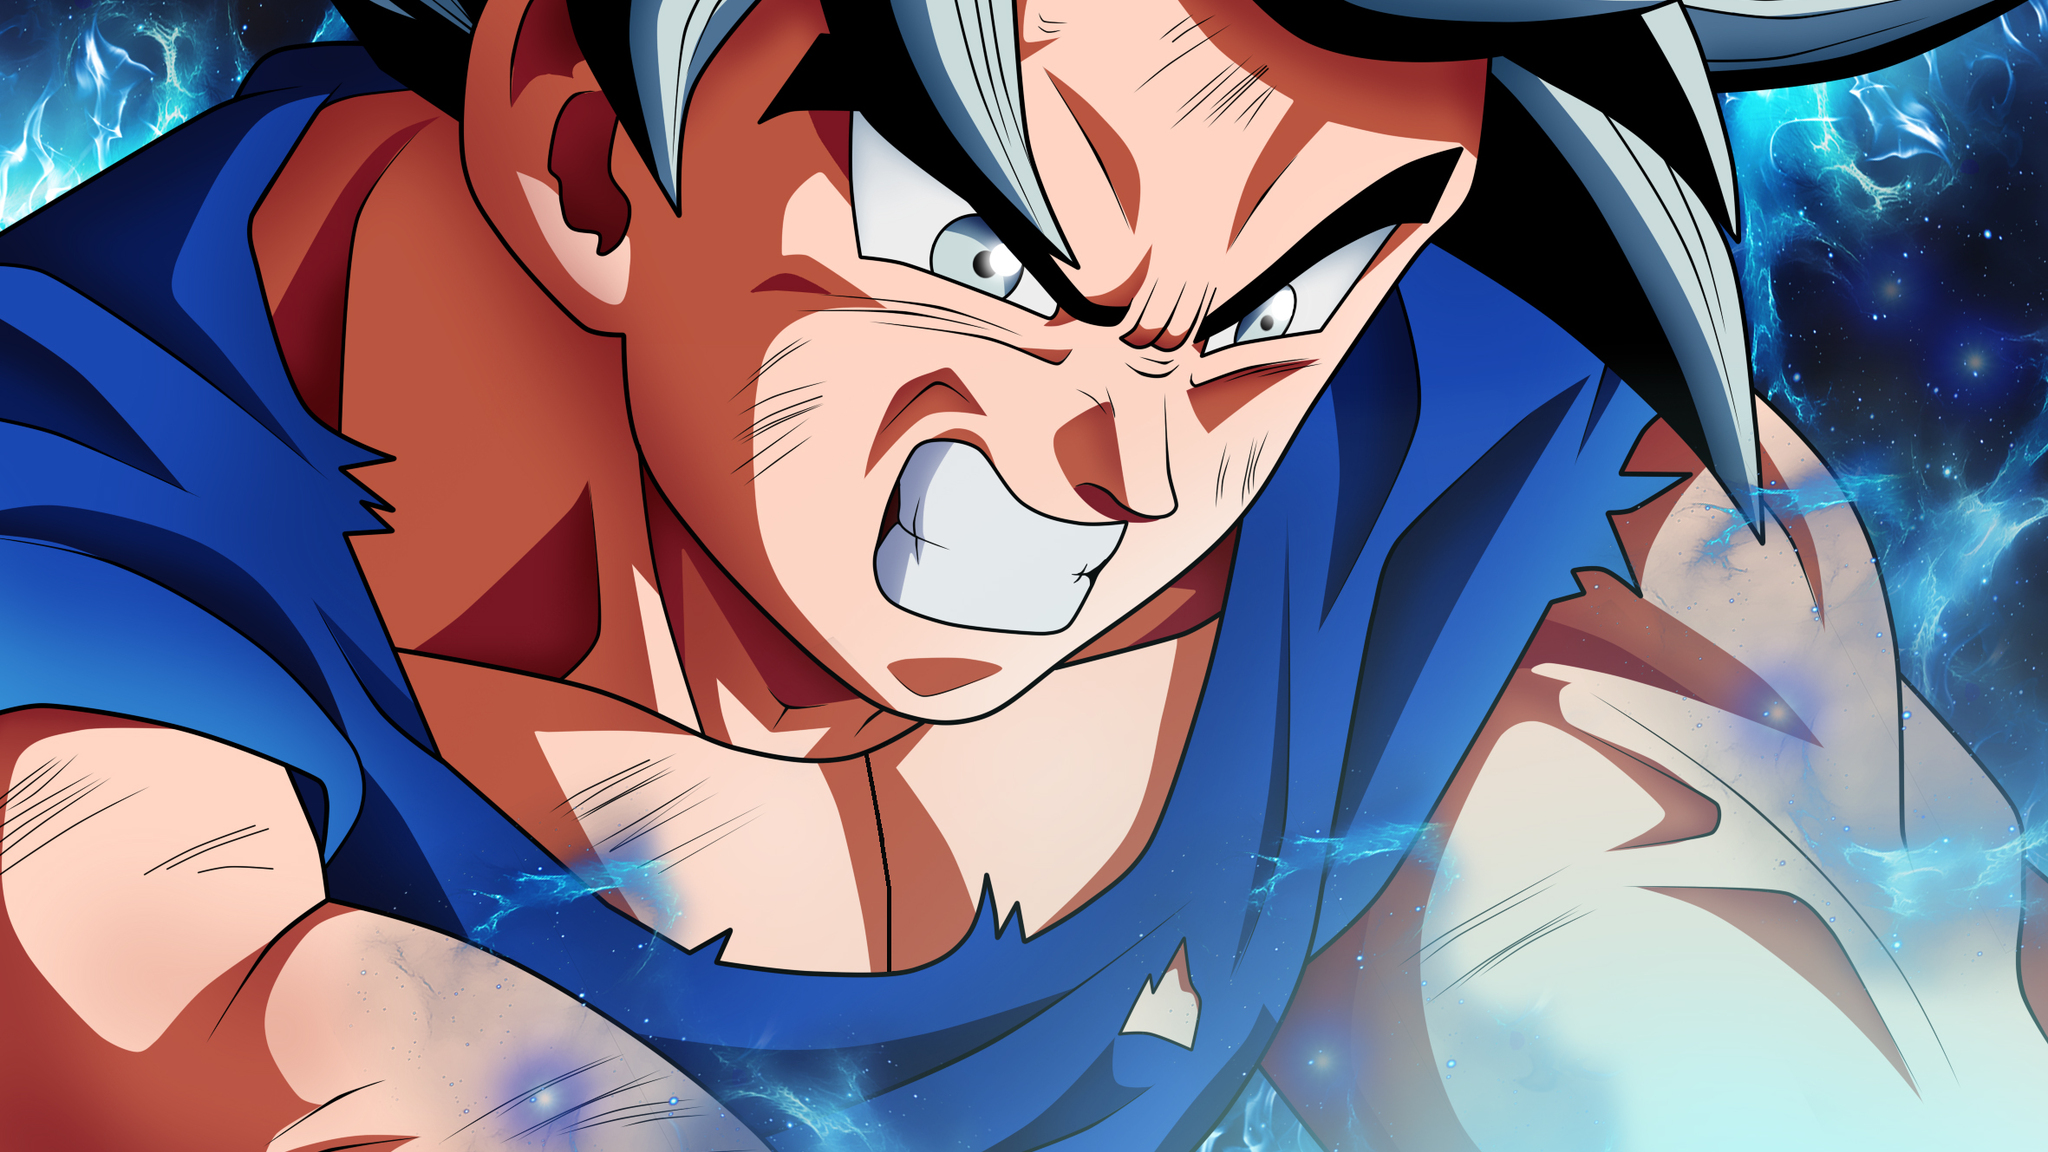 2048x1152 Goku Dragon Ball Super Anime HD 2018 2048x1152 Resolution HD 4k Wallpapers, Images ...